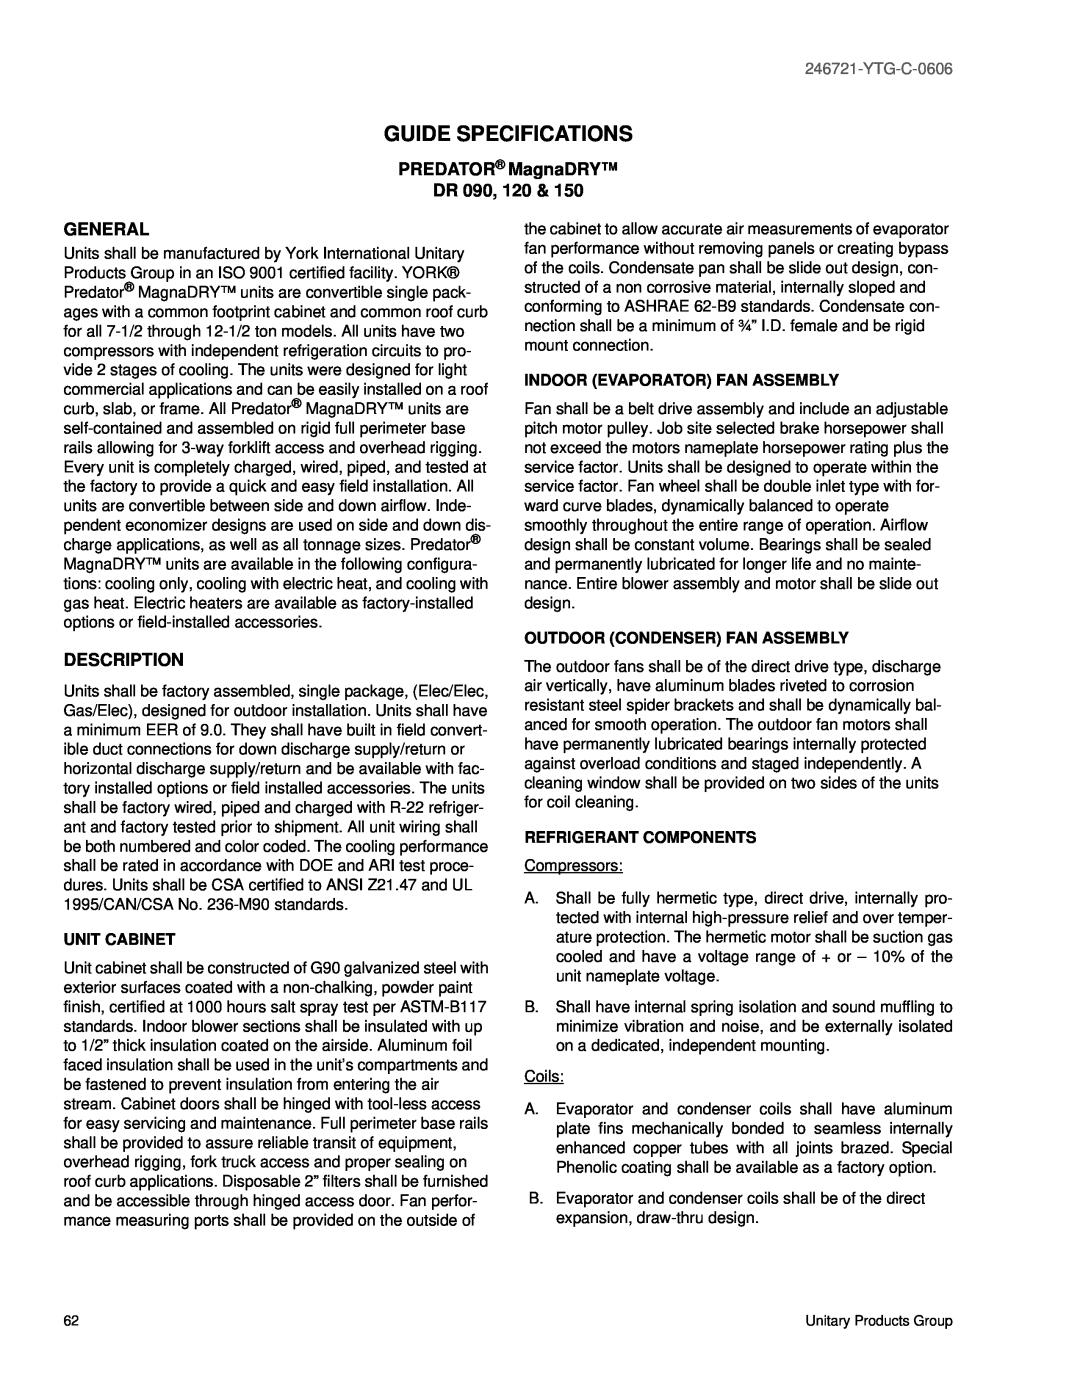 York DR150, DR120, DR090 manual Guide Specifications, PREDATOR MagnaDRY DR, General, Description, YTG-C-0606 